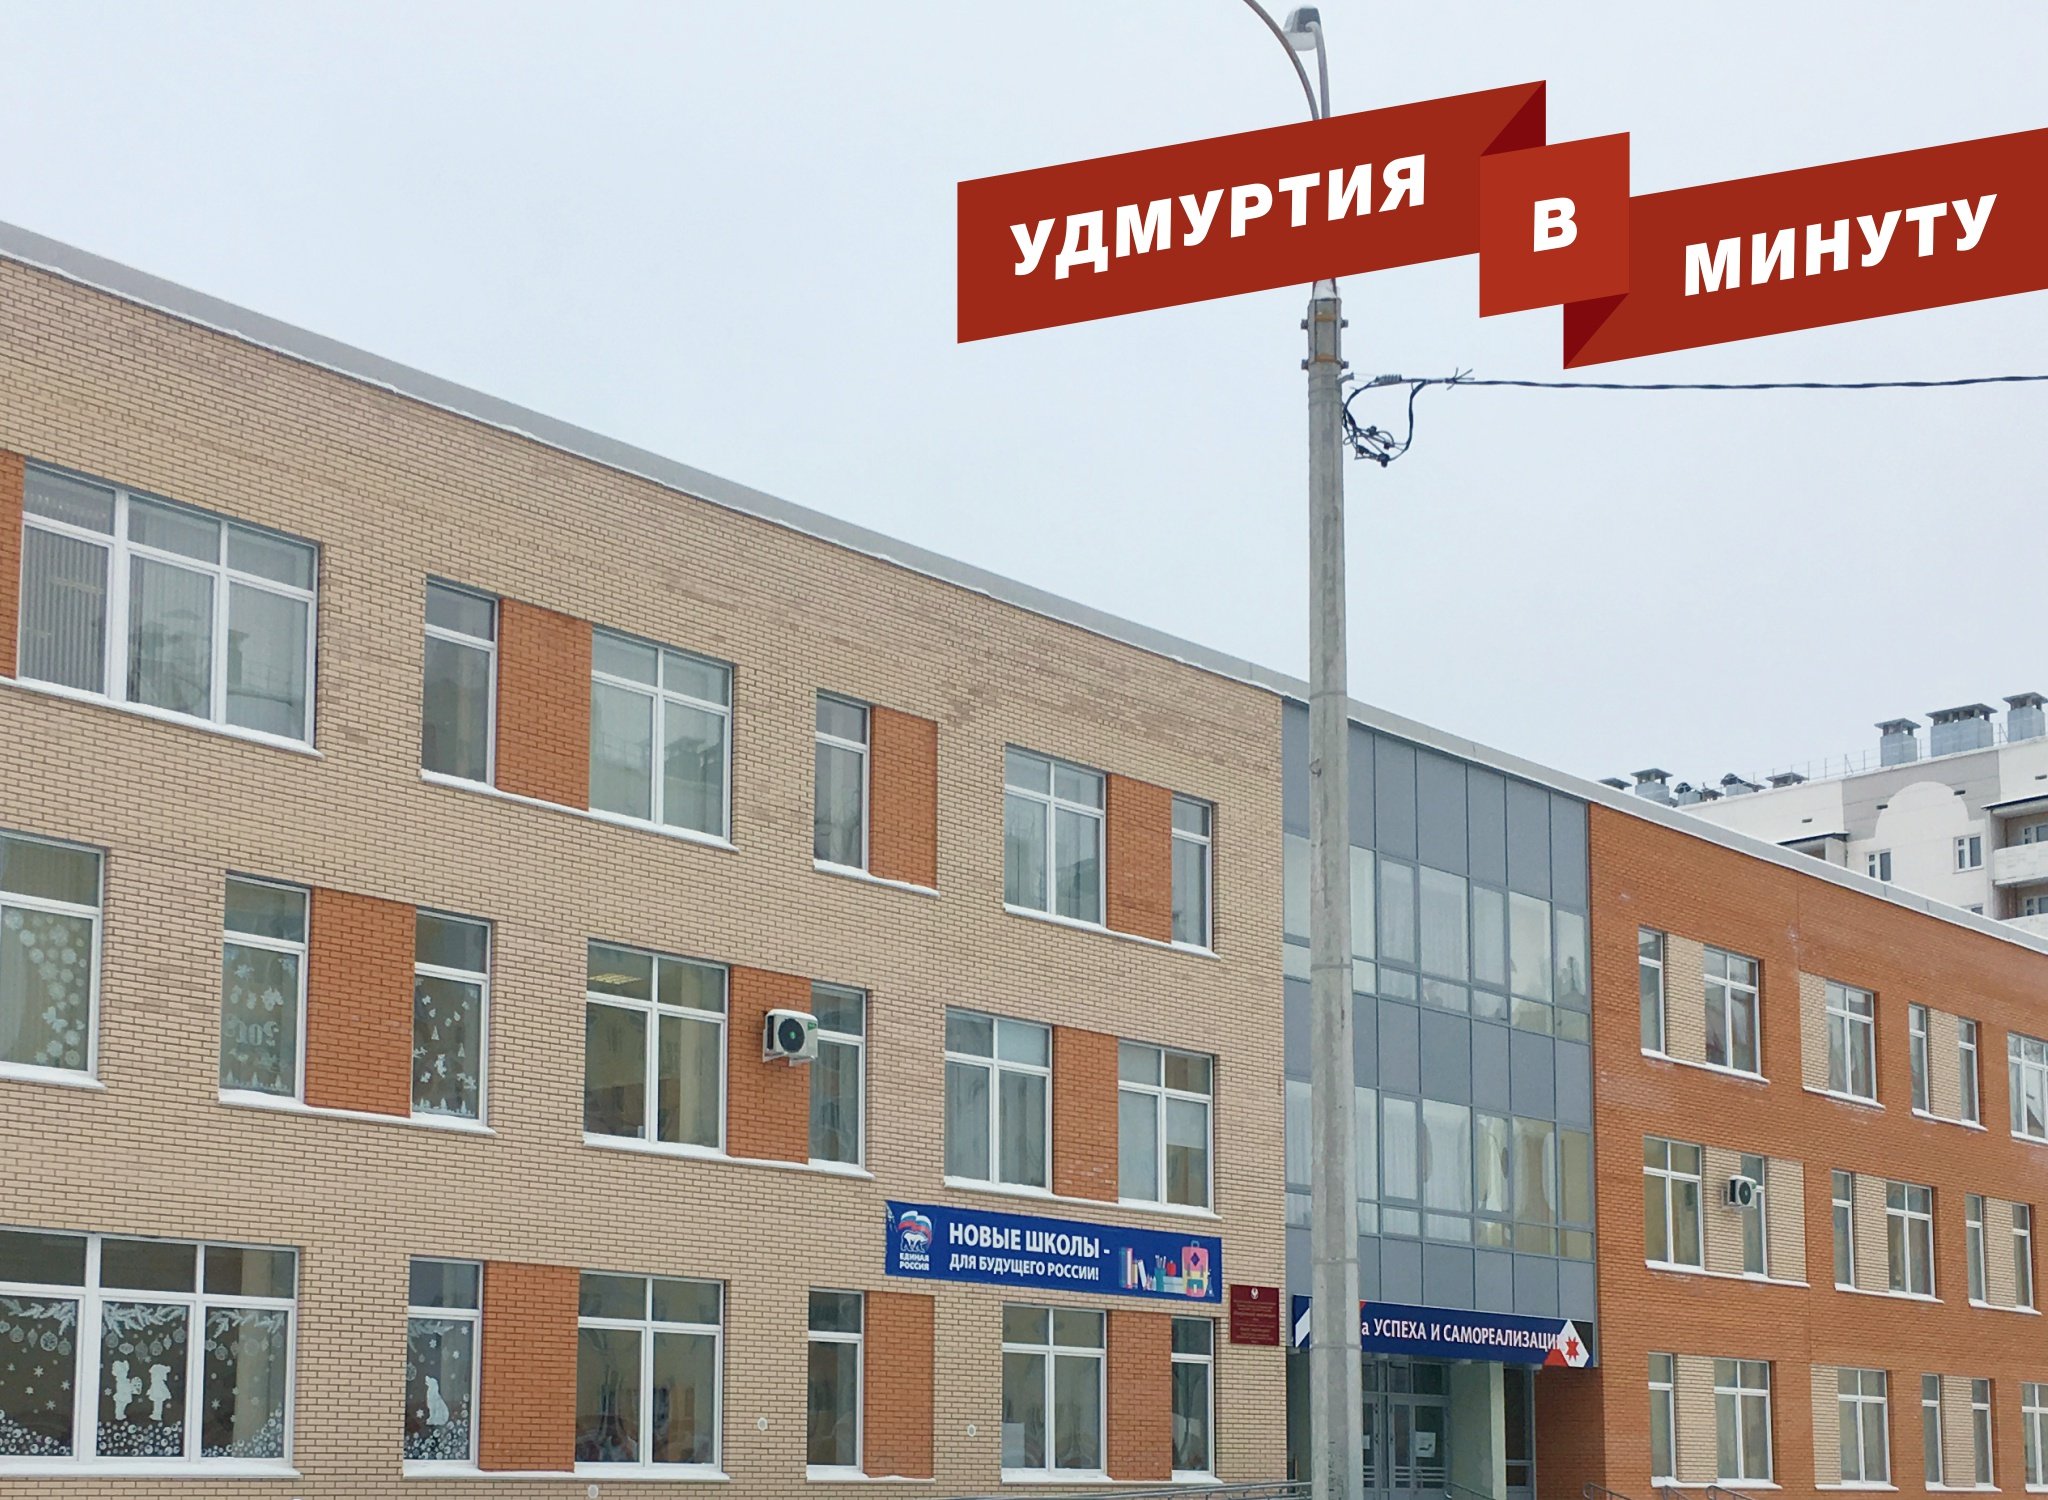 Удмуртия в минуту: статус школы микрорайоне «Столичный» в Ижевске и разметка на Удмуртской